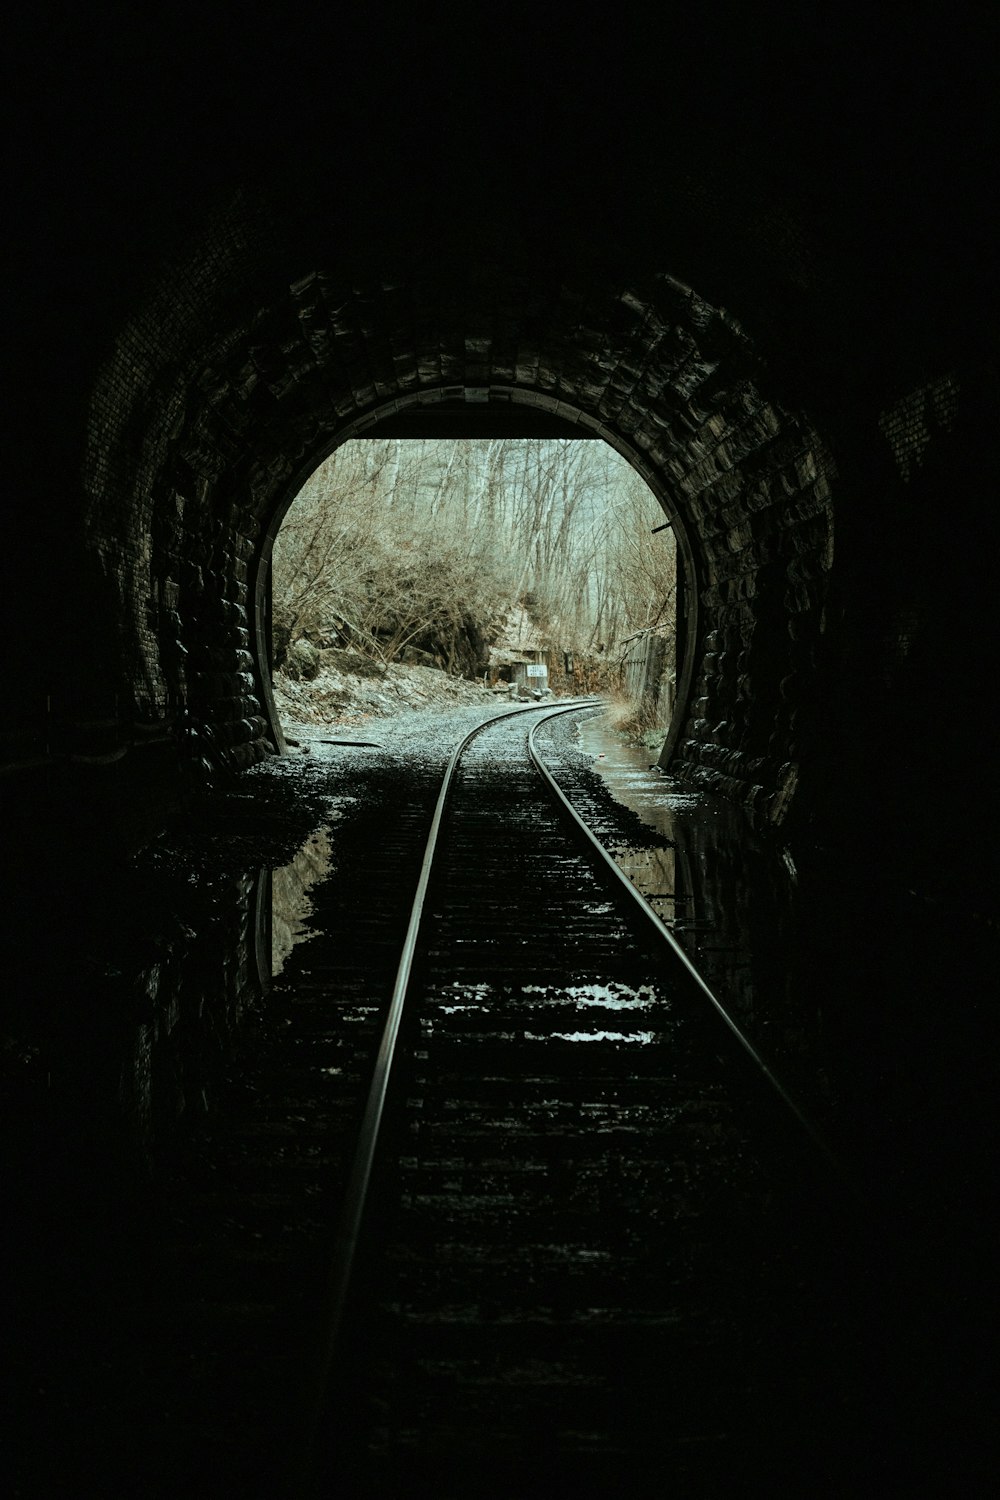 foto in scala di grigi della rotaia del treno